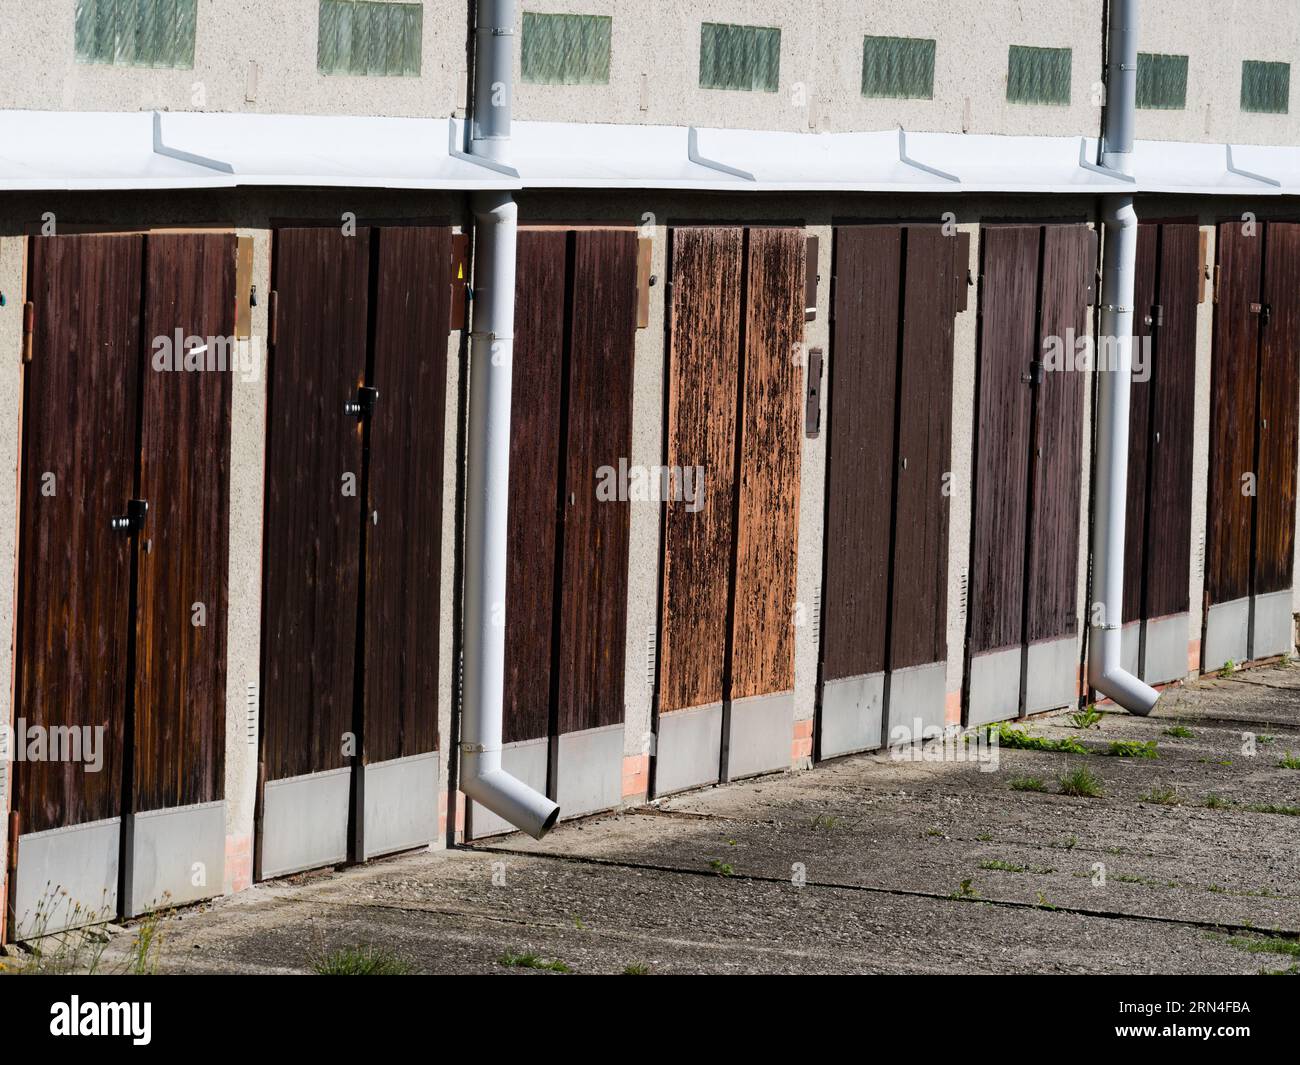 Reihe alter Garagen mit Holztüren in der Nähe des Wohnviertels. Stadtfoto. Roznov Pod Radhostem, Tschechische republik. Stockfoto